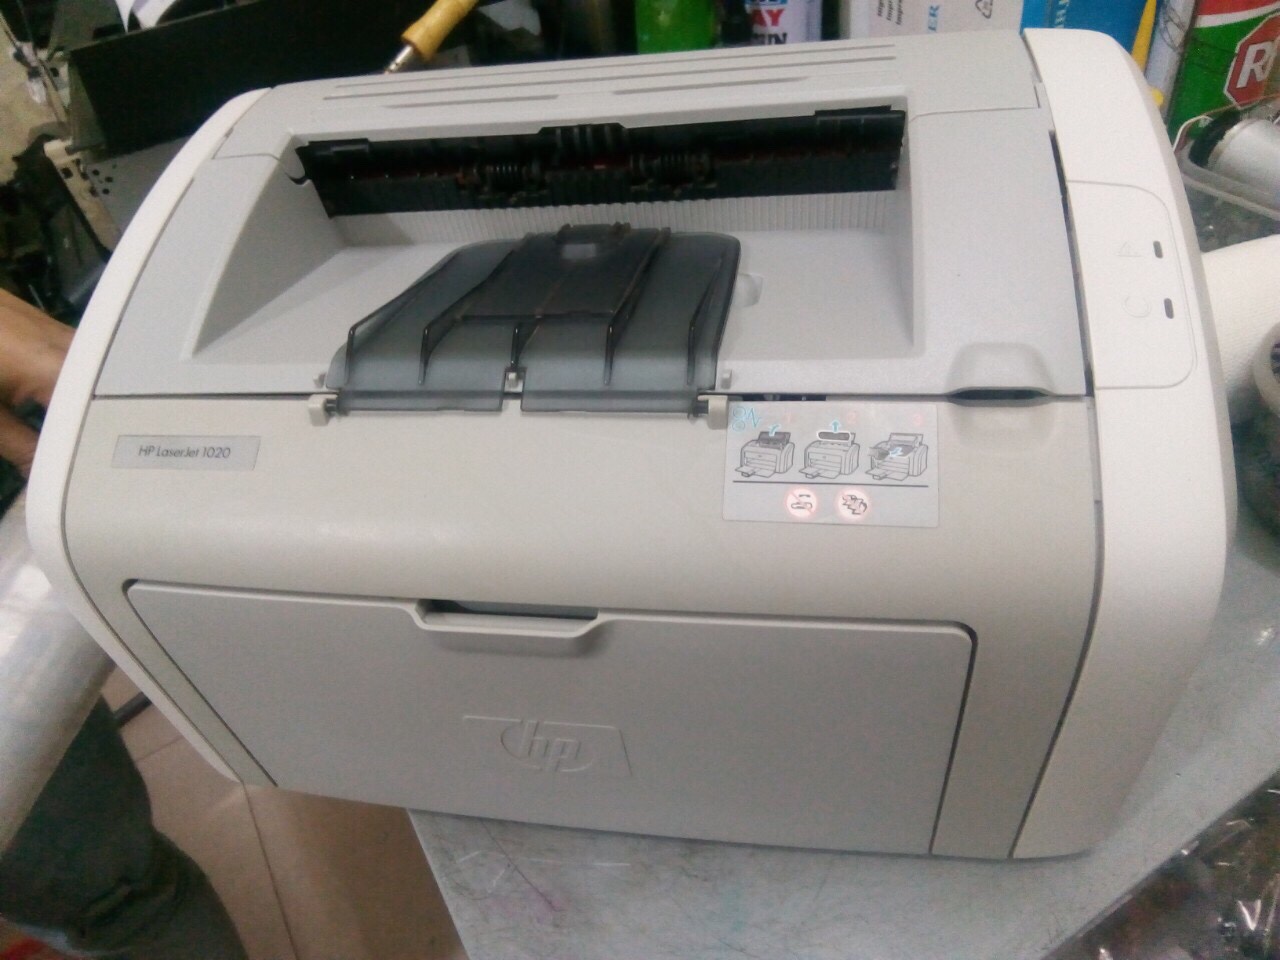 Máy in cũ HP LaserJet 1020 printer (Q5911A)